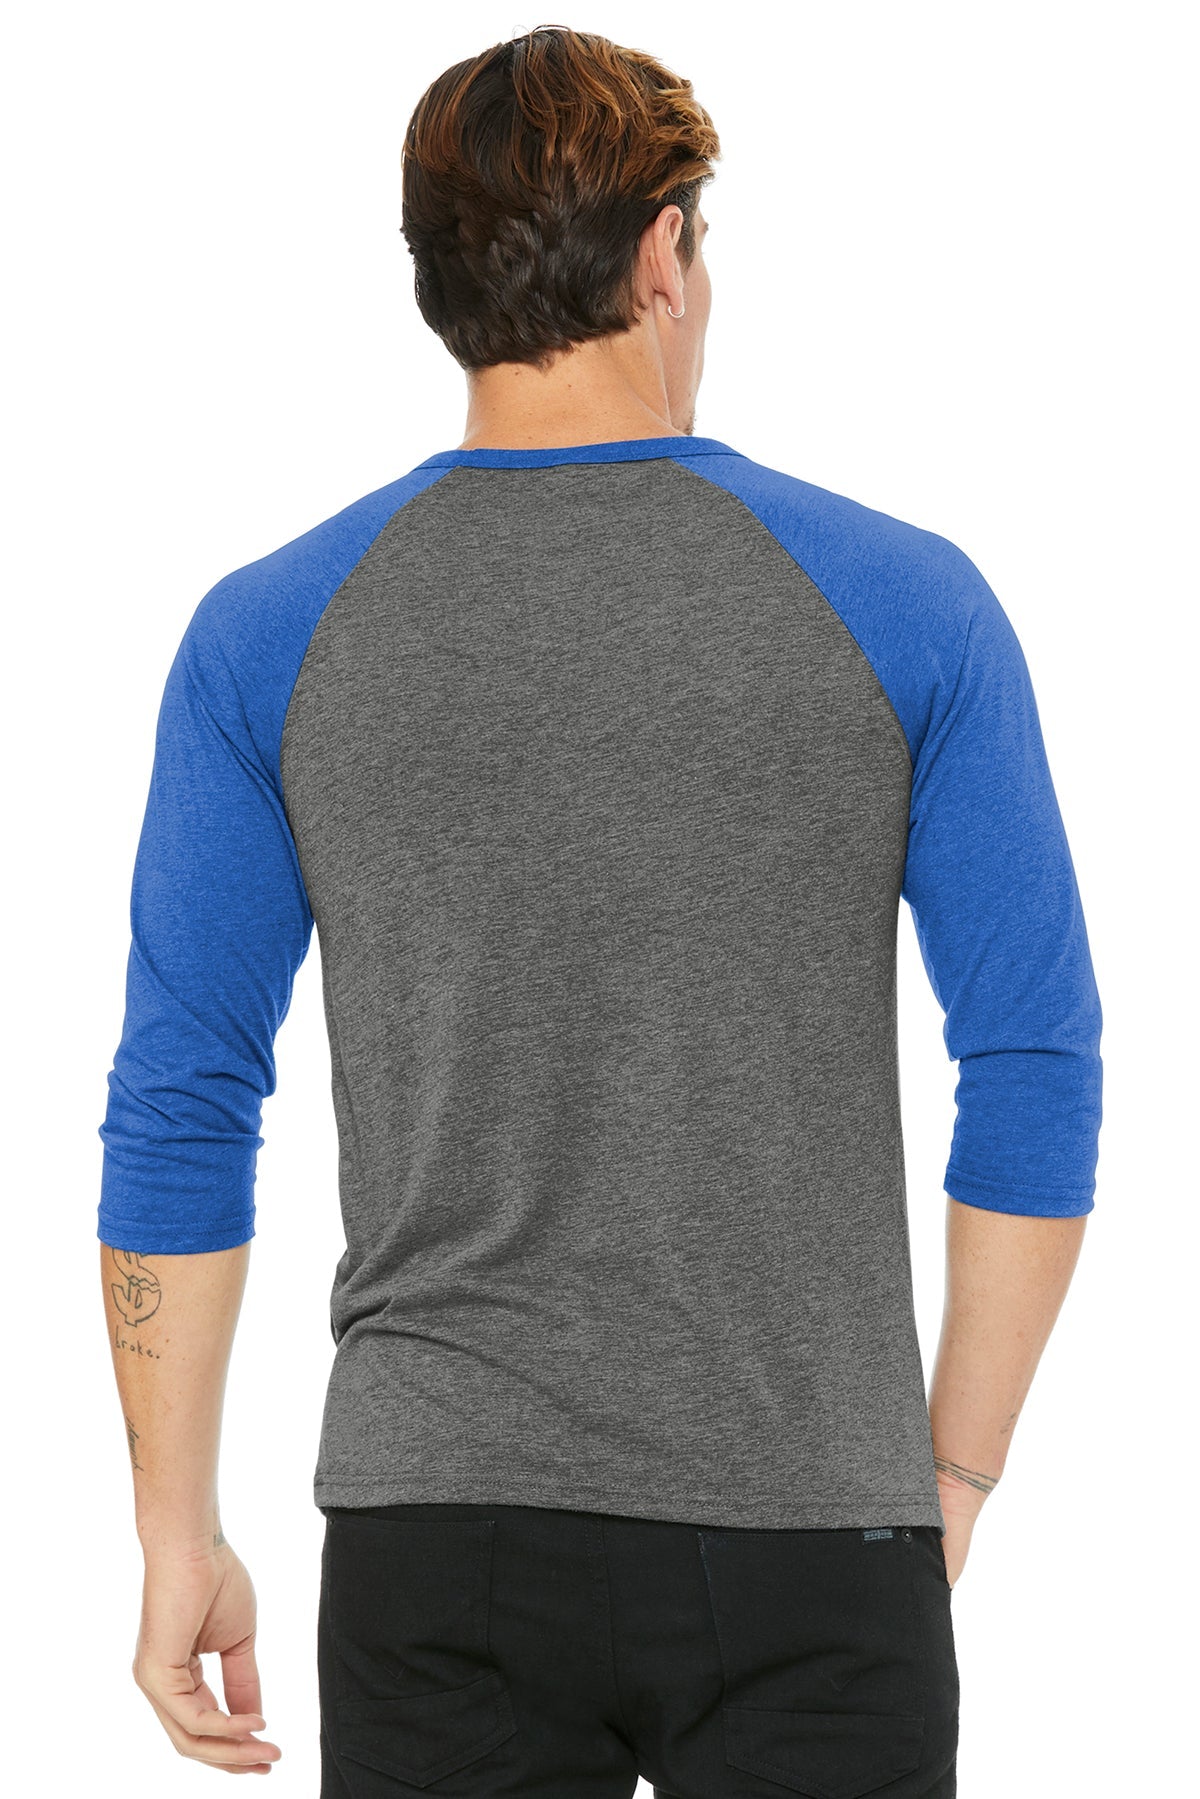 bella + canvas unisex 3/4-sleeve baseball t-shirt 3200 grey/ tr ryl trb